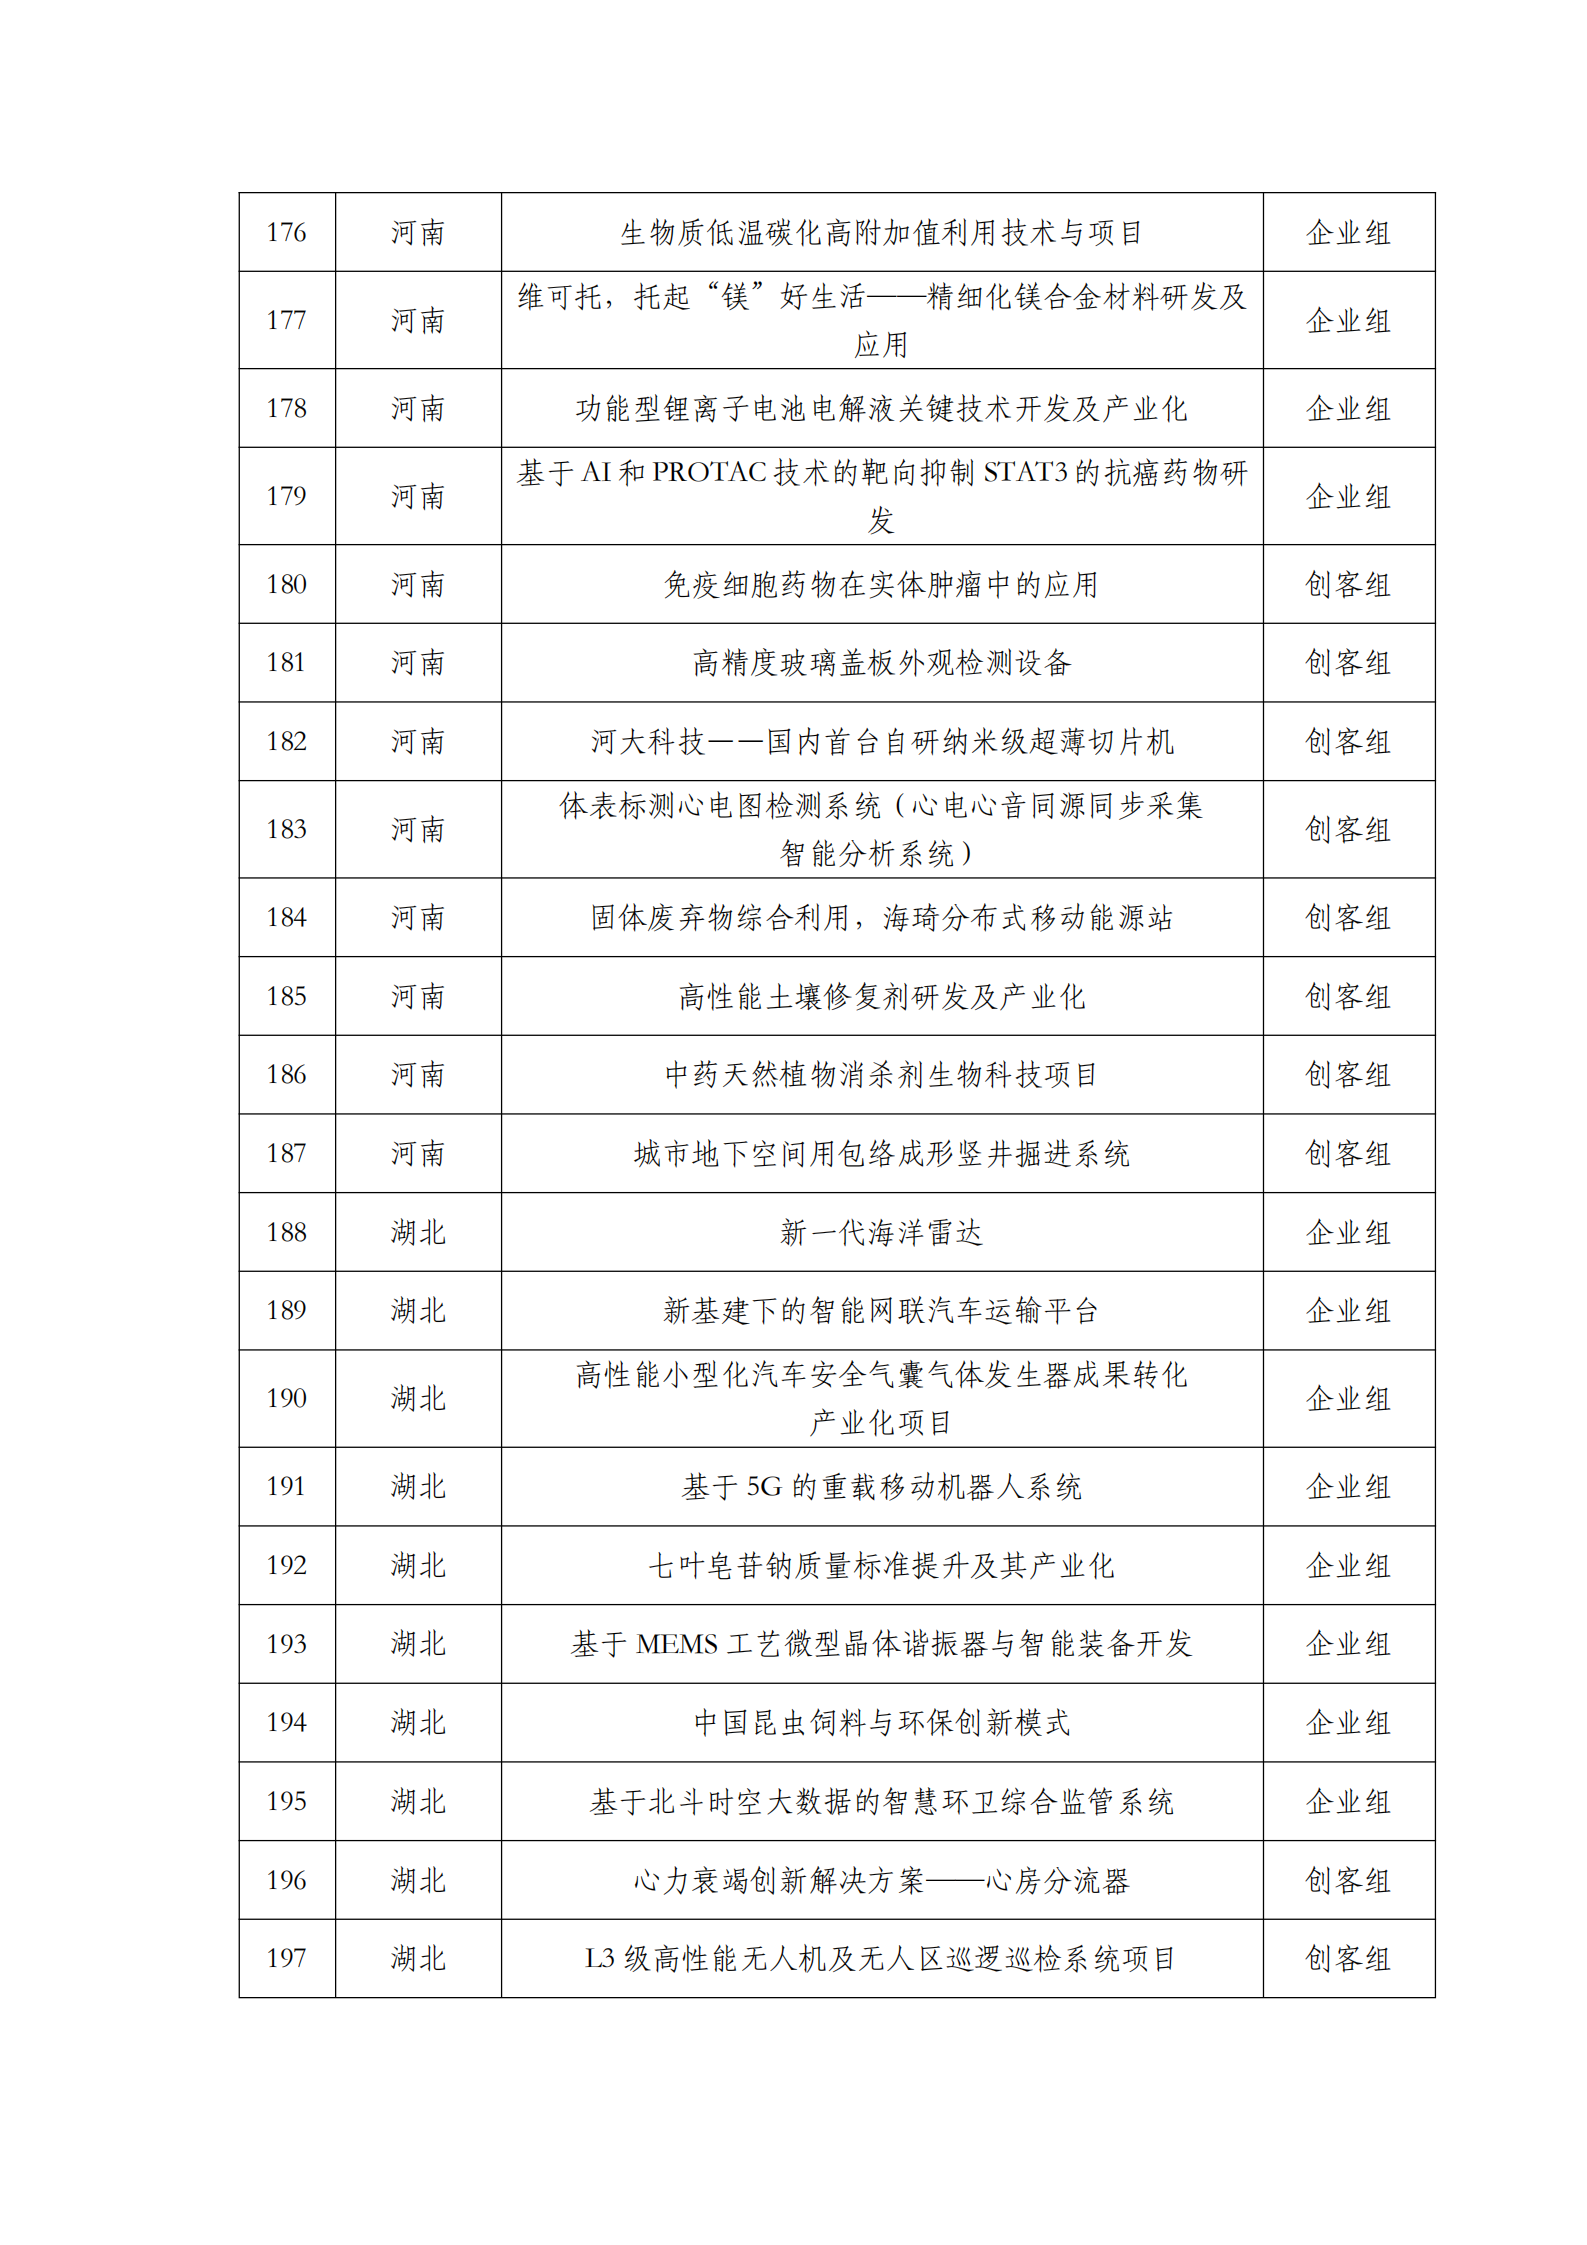 第六届“创客中国”中小企业创新创业大赛500强公示名单_08.png